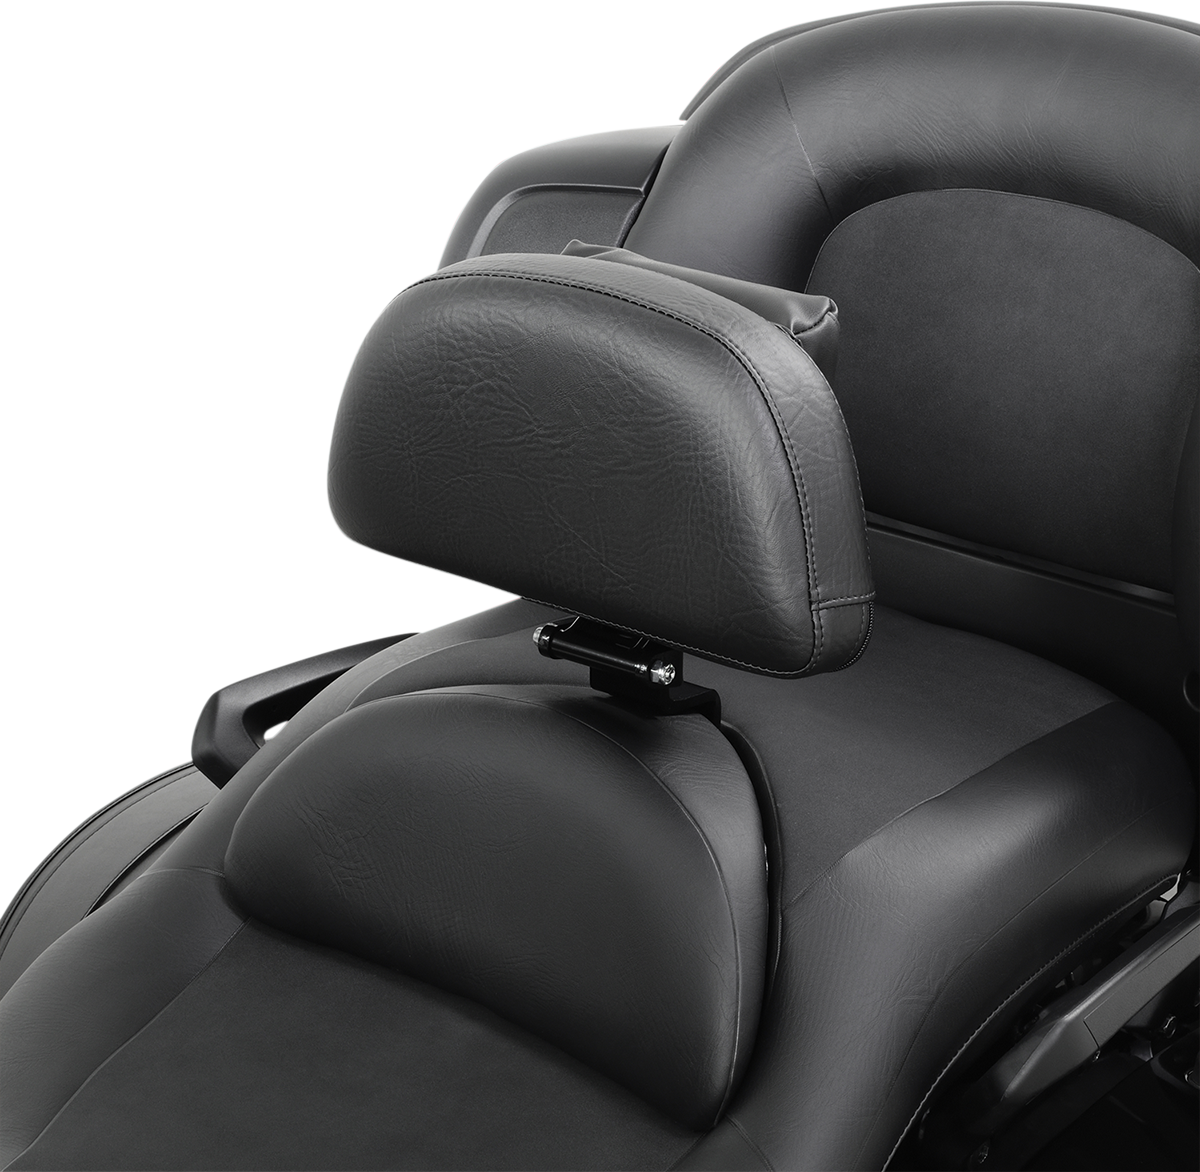 Driver's Backrest For Yamaha XV 1900 Star Venture 2018-2021